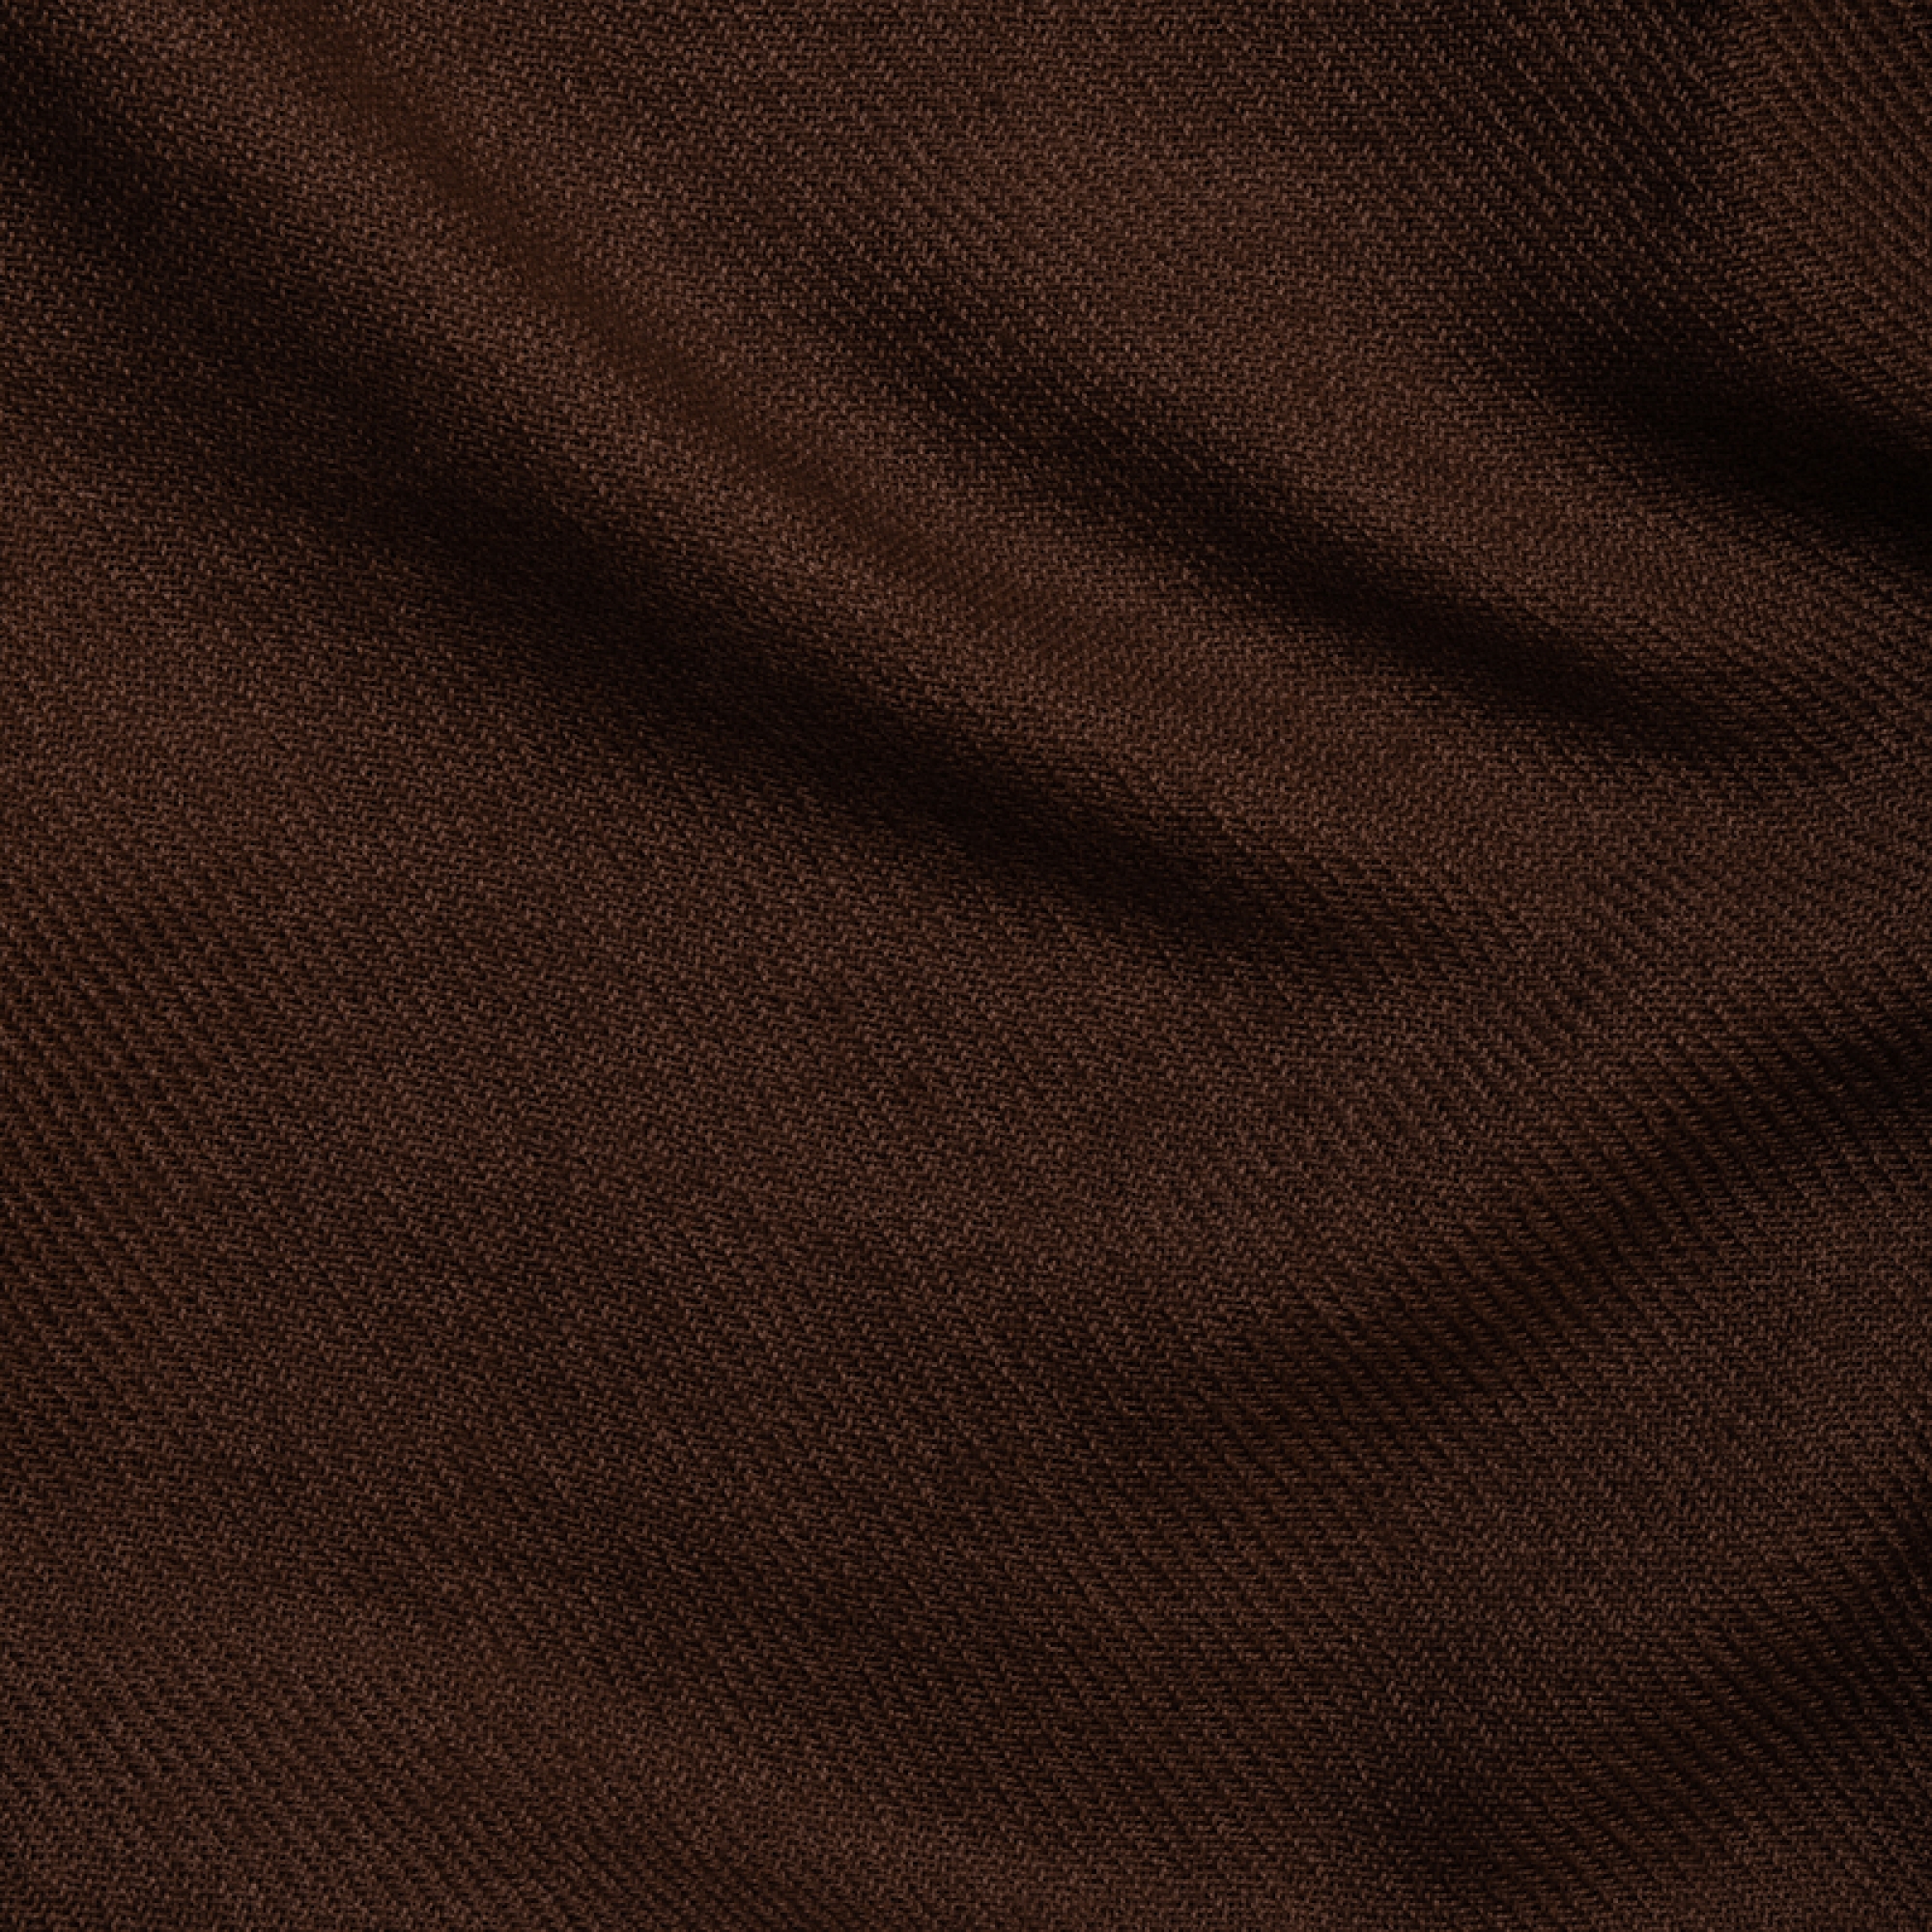 Cashmere accessori novita toodoo plain l 220 x 220 cacao 220x220cm